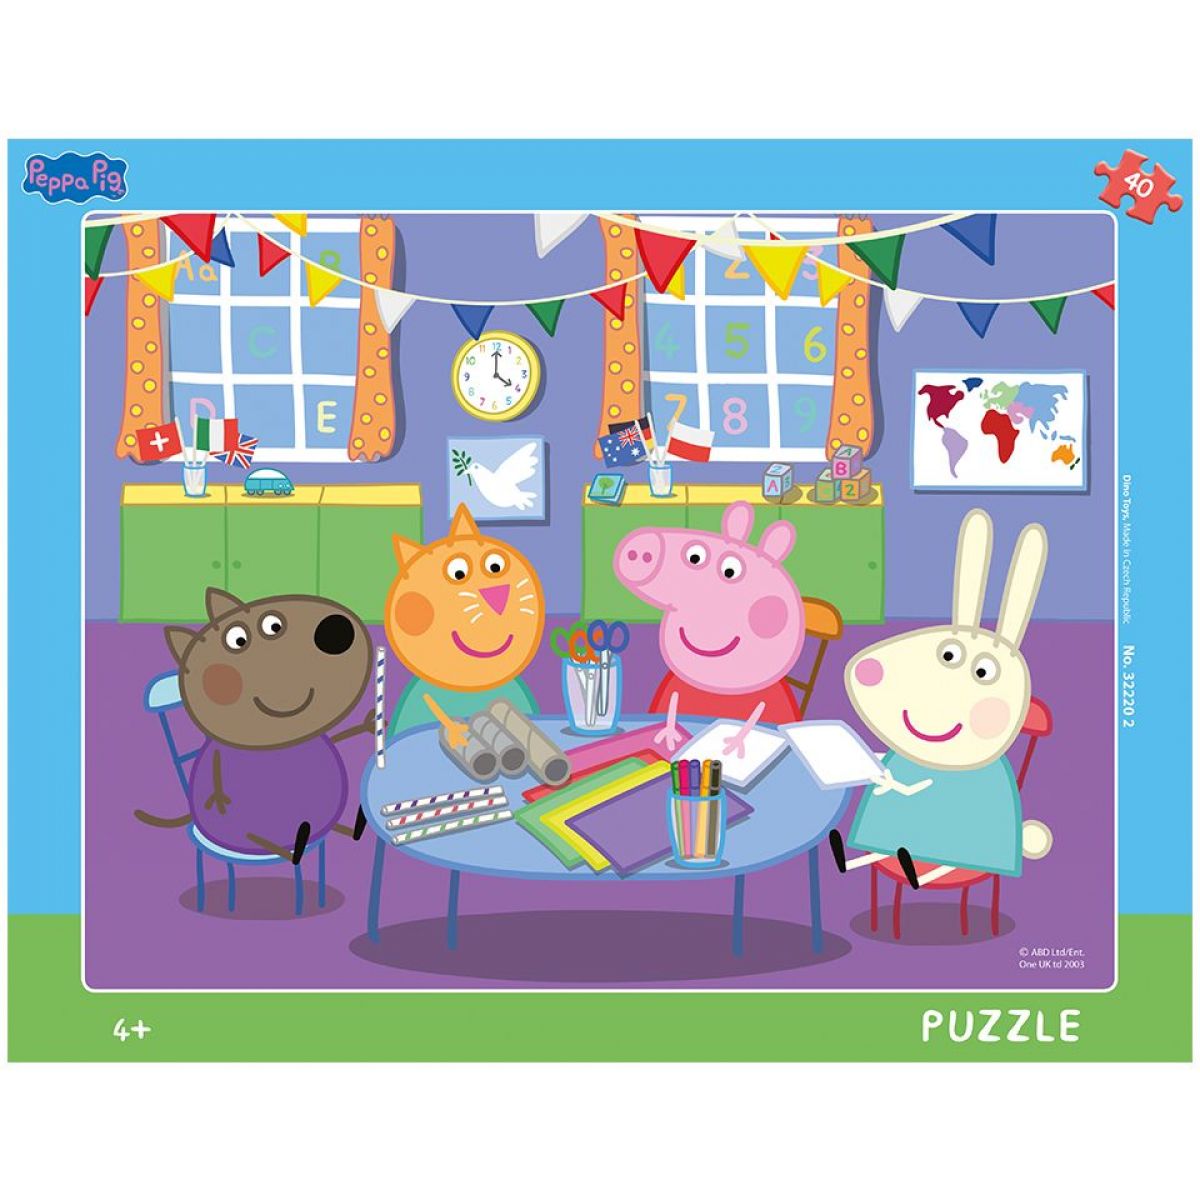 Dino Peppa Pig Ve školce deskové puzzle 40 dílků